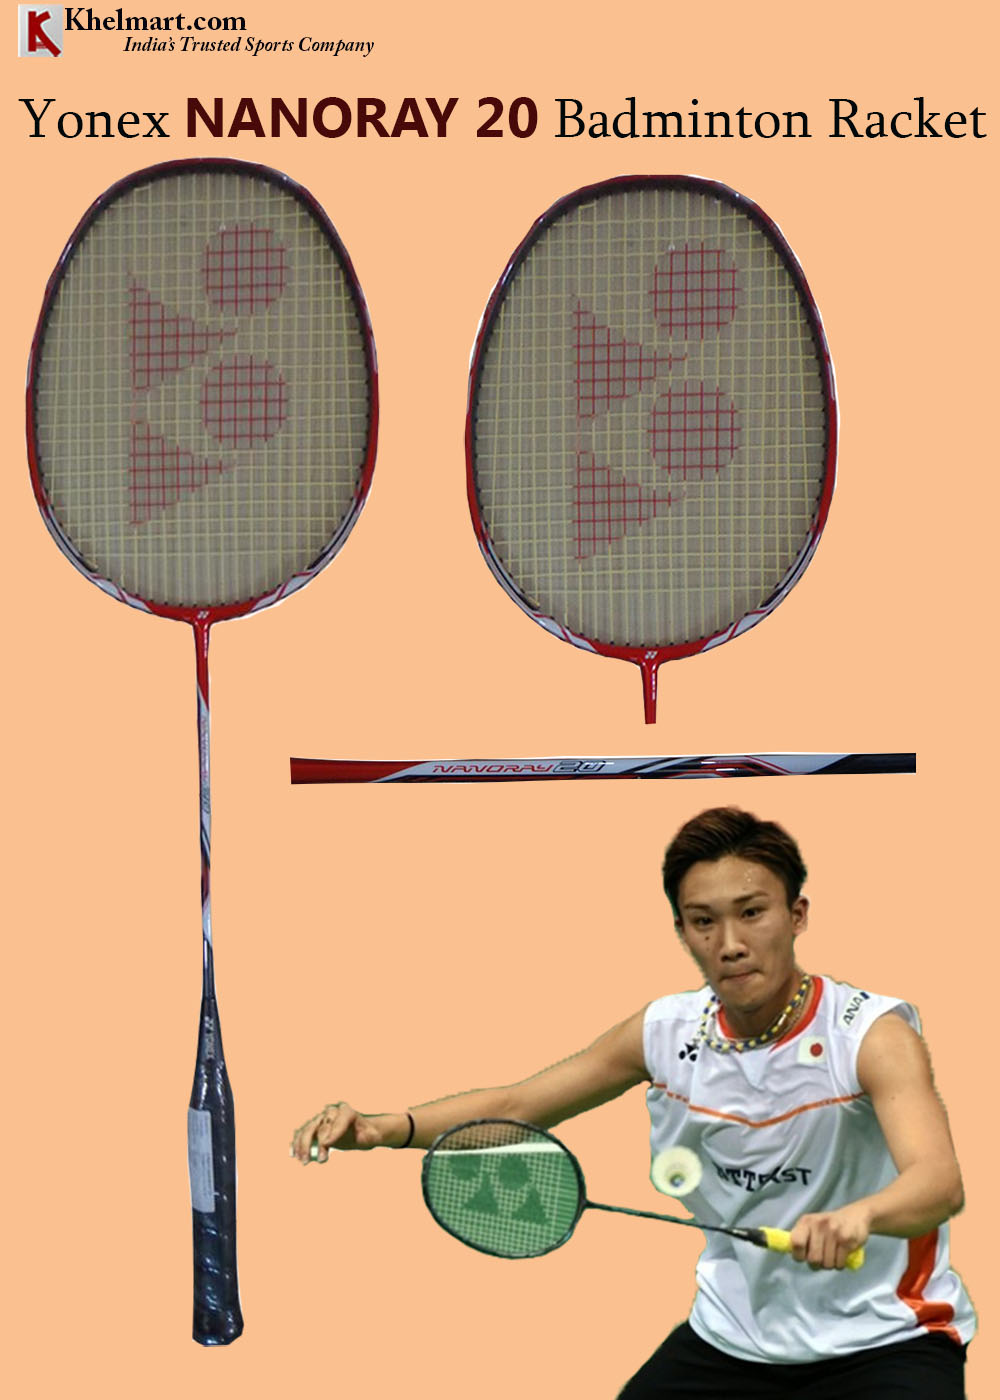 yone nanoray 20 badminton racket